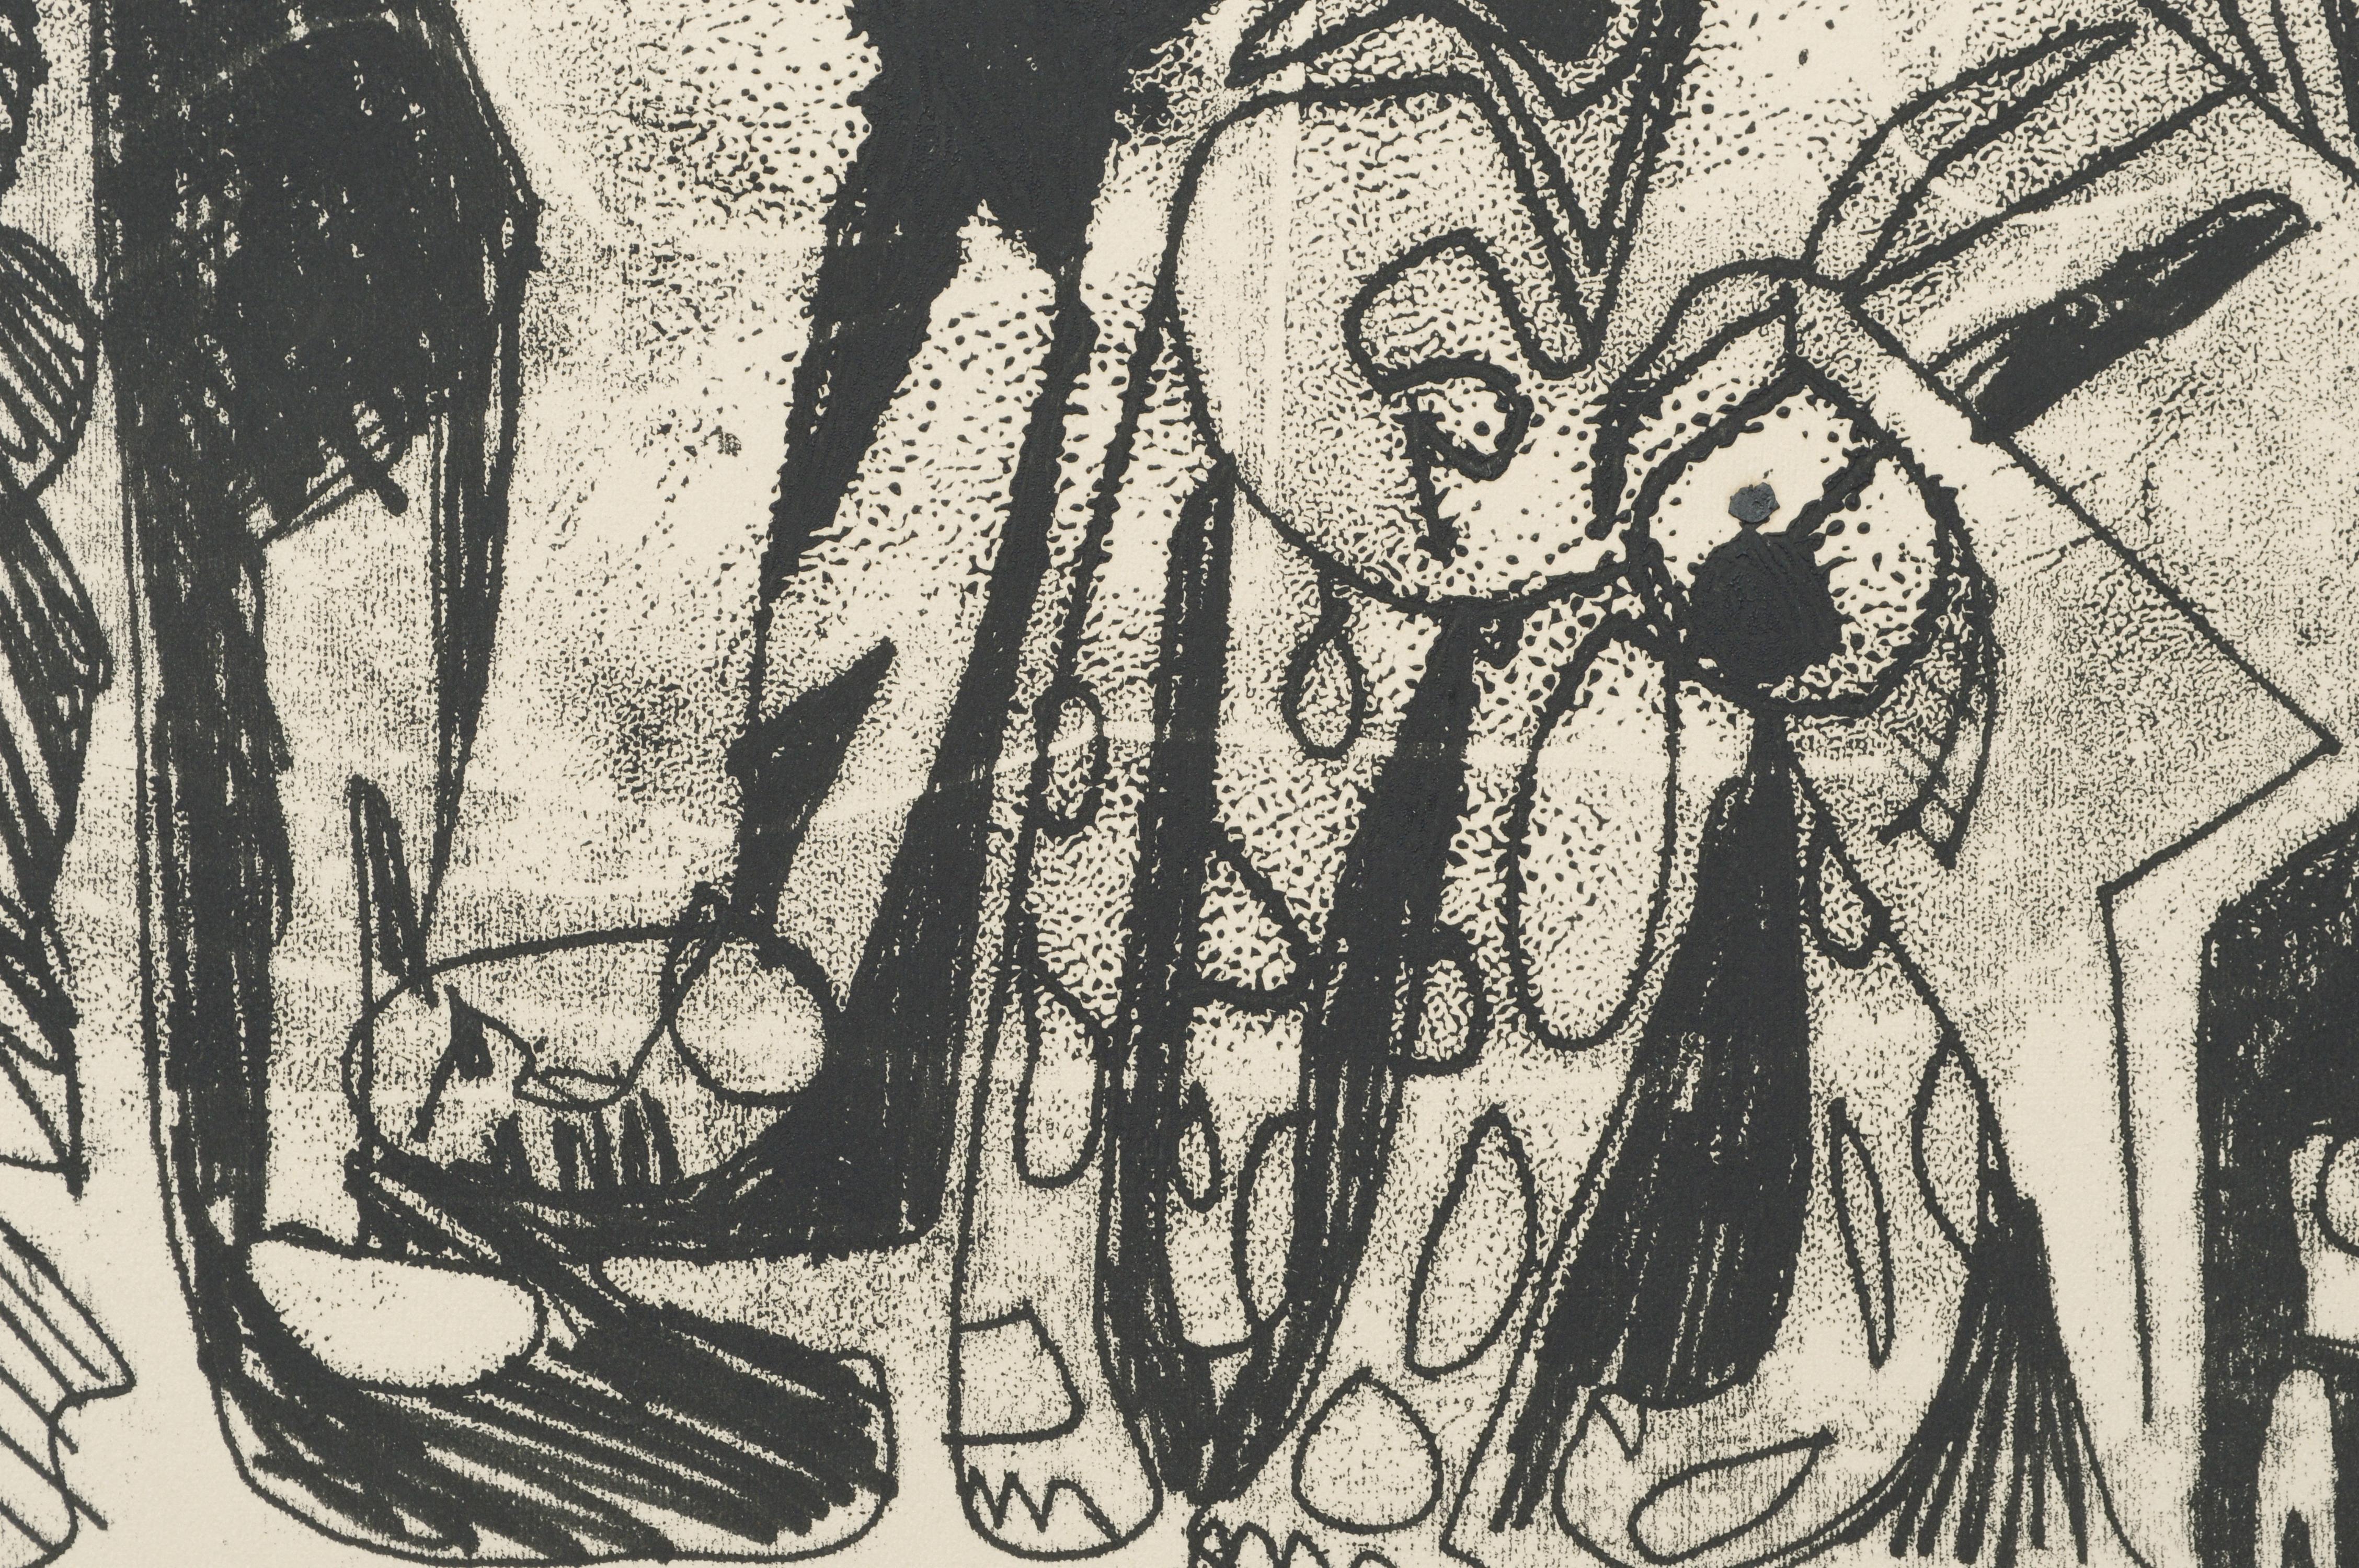 Abstrakte figurative Lithografie mit einem lebhaften Durcheinander von abstrahierten Tier- und Figurenformen von Michael William Eggleston (Amerikaner, 20. Jahrhundert). Betitelt (unleserlich), nummeriert (